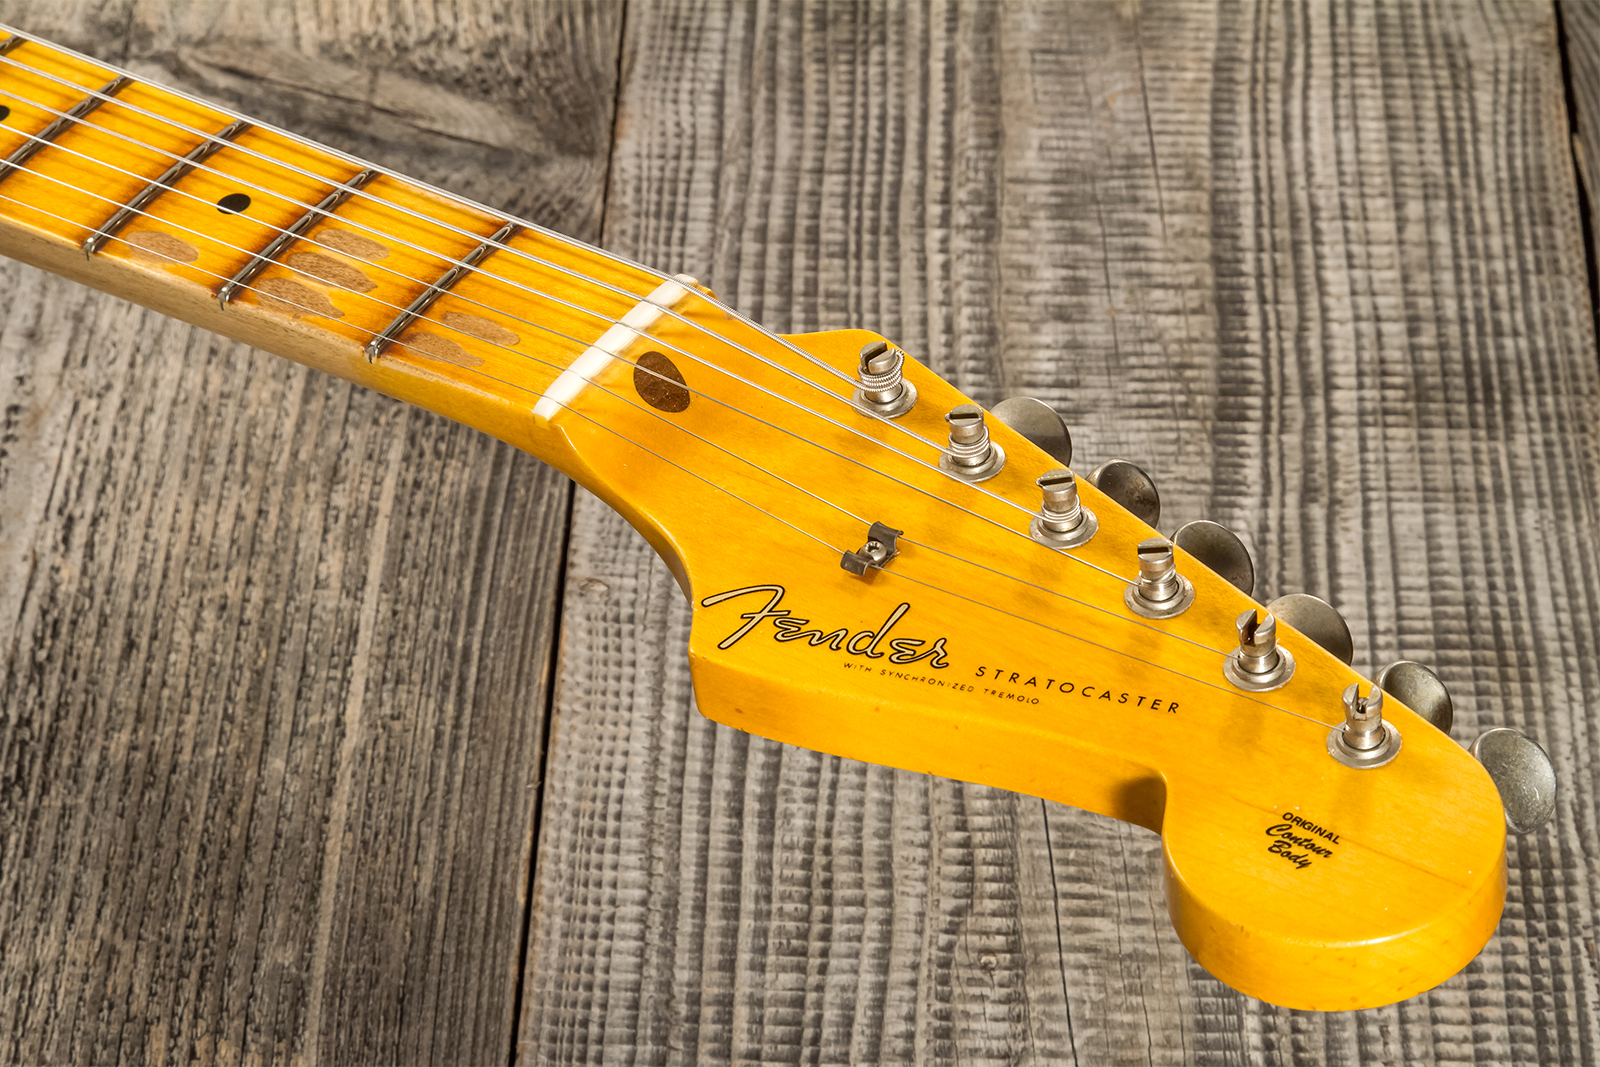 Fender Custom Shop Strat 1956 3s Trem Mn #cz570281 - Journeyman Relic Aged 2-color Sunburst - E-Gitarre in Str-Form - Variation 6